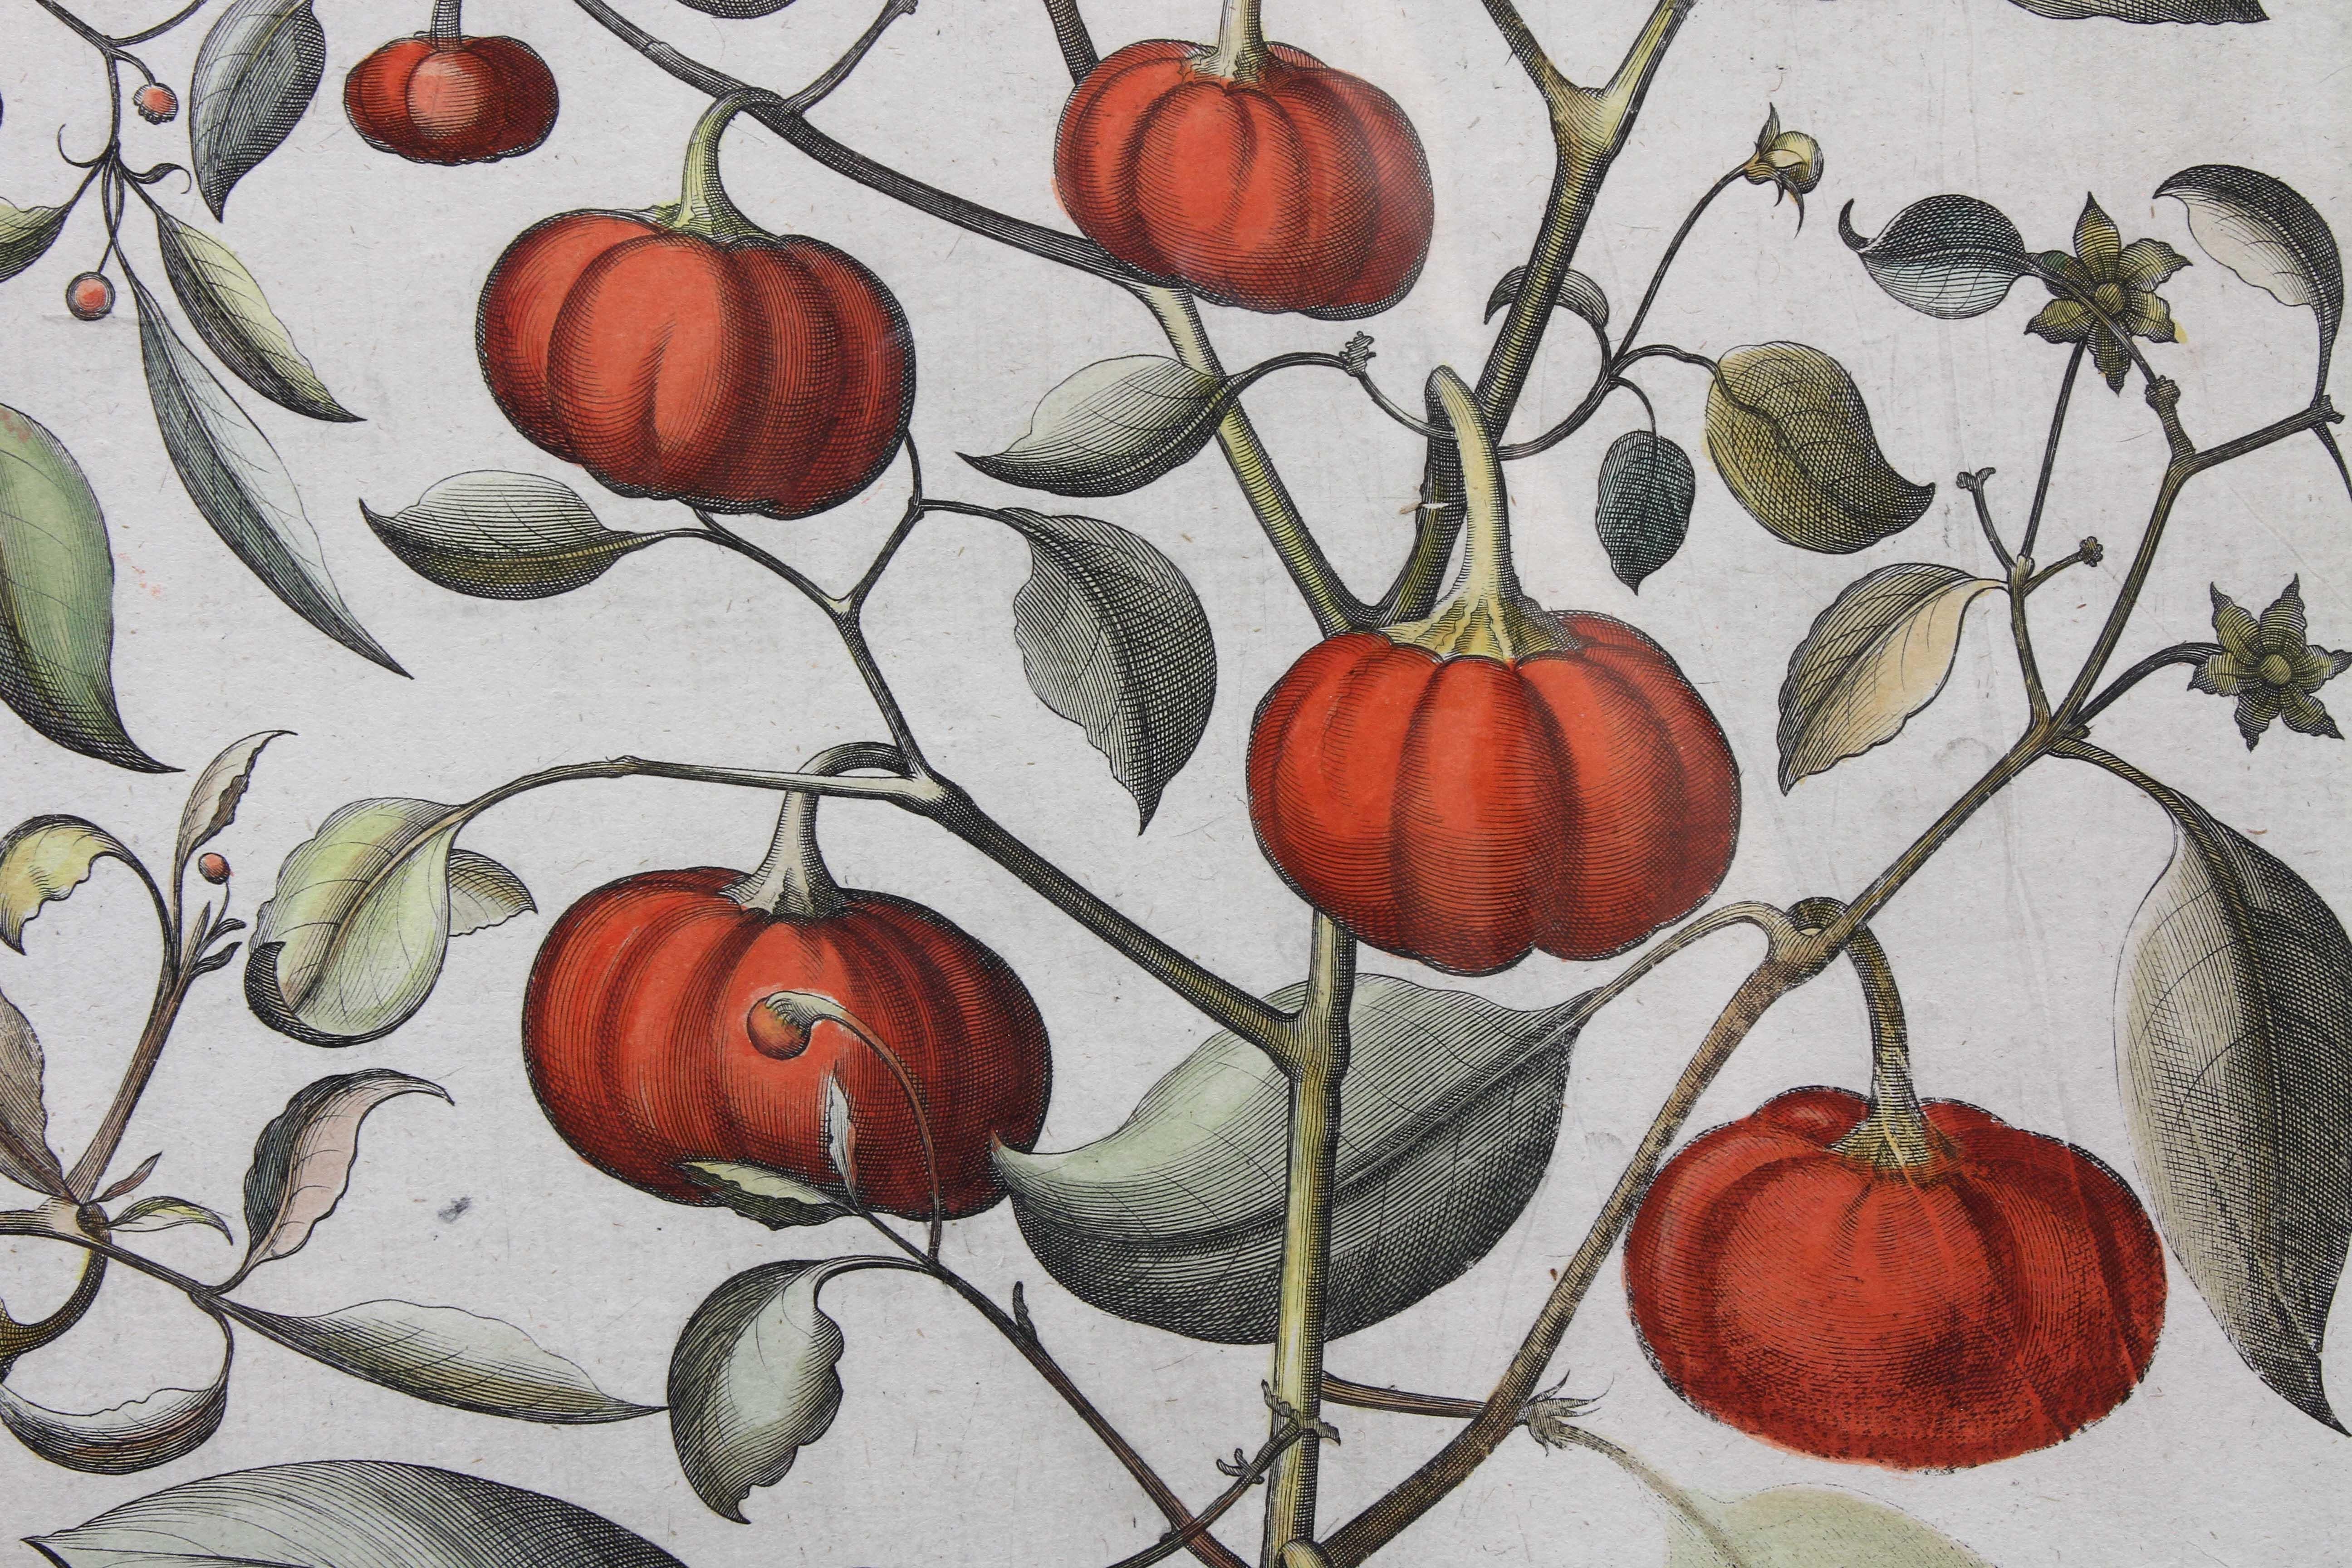 German Pair of Botanical Engravings of Tomatoes by Basilius Besler